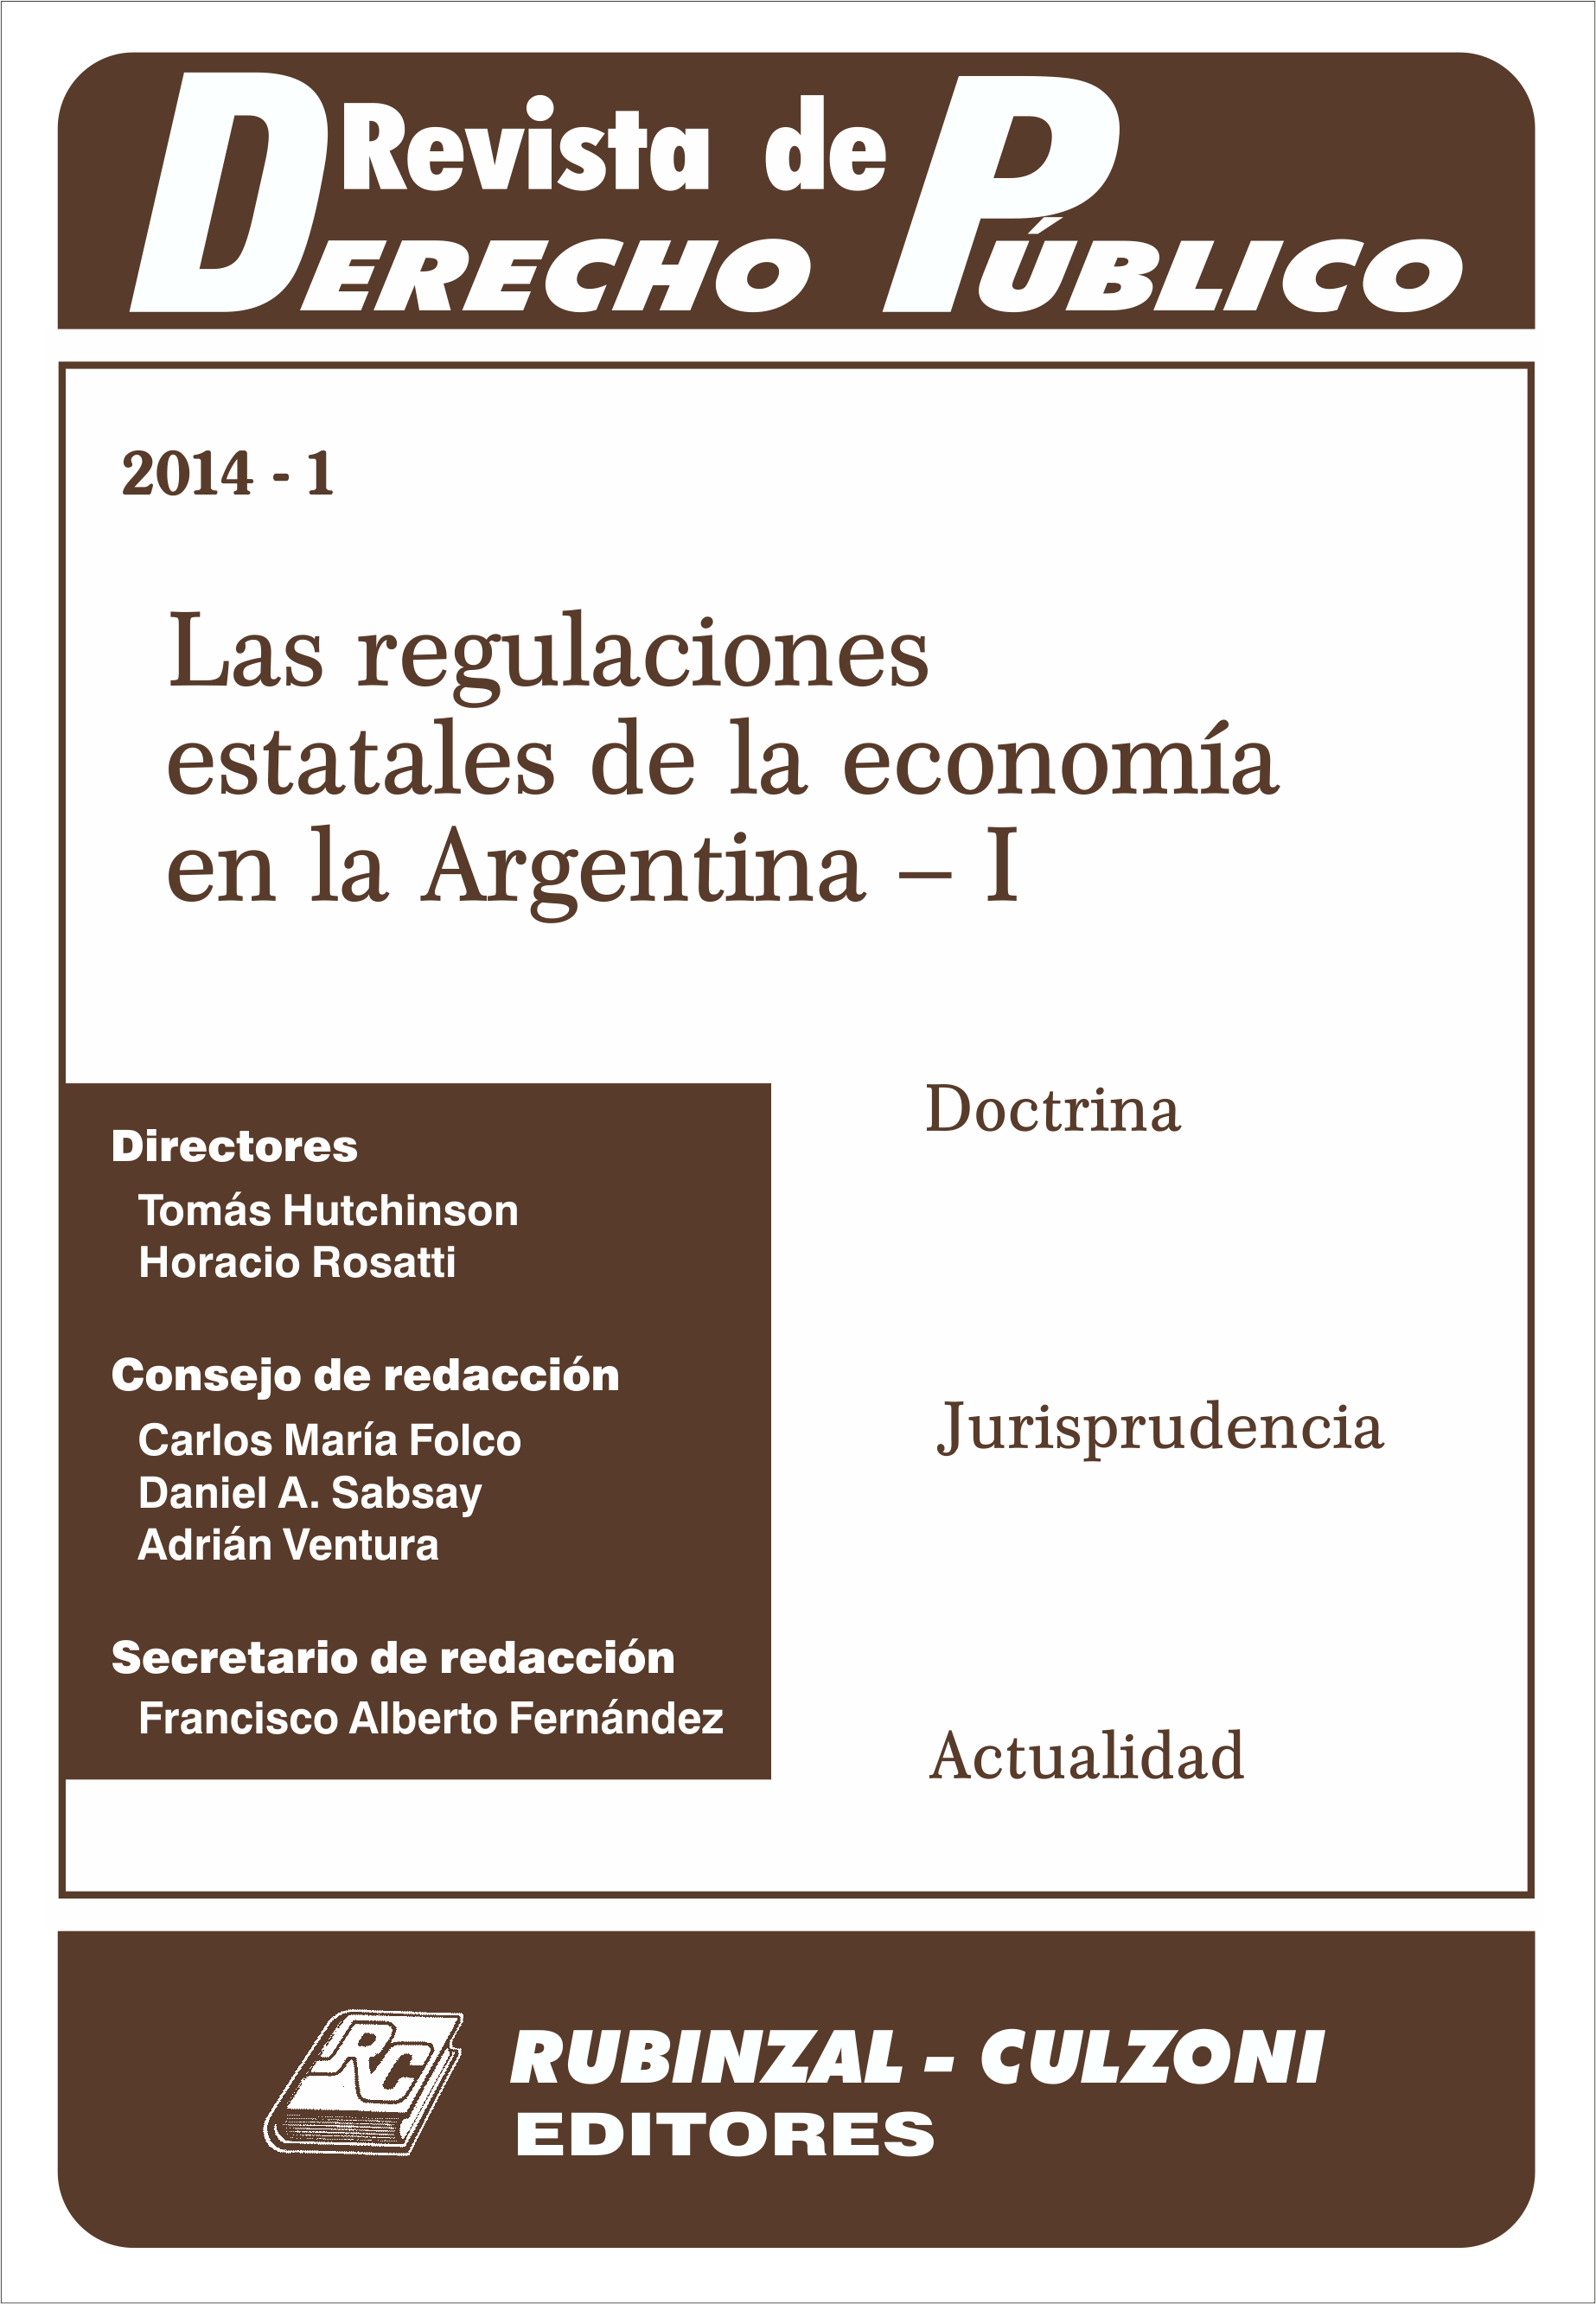 Revista de Derecho Público - Las regulaciones estatales de la economía en la Argentina - I